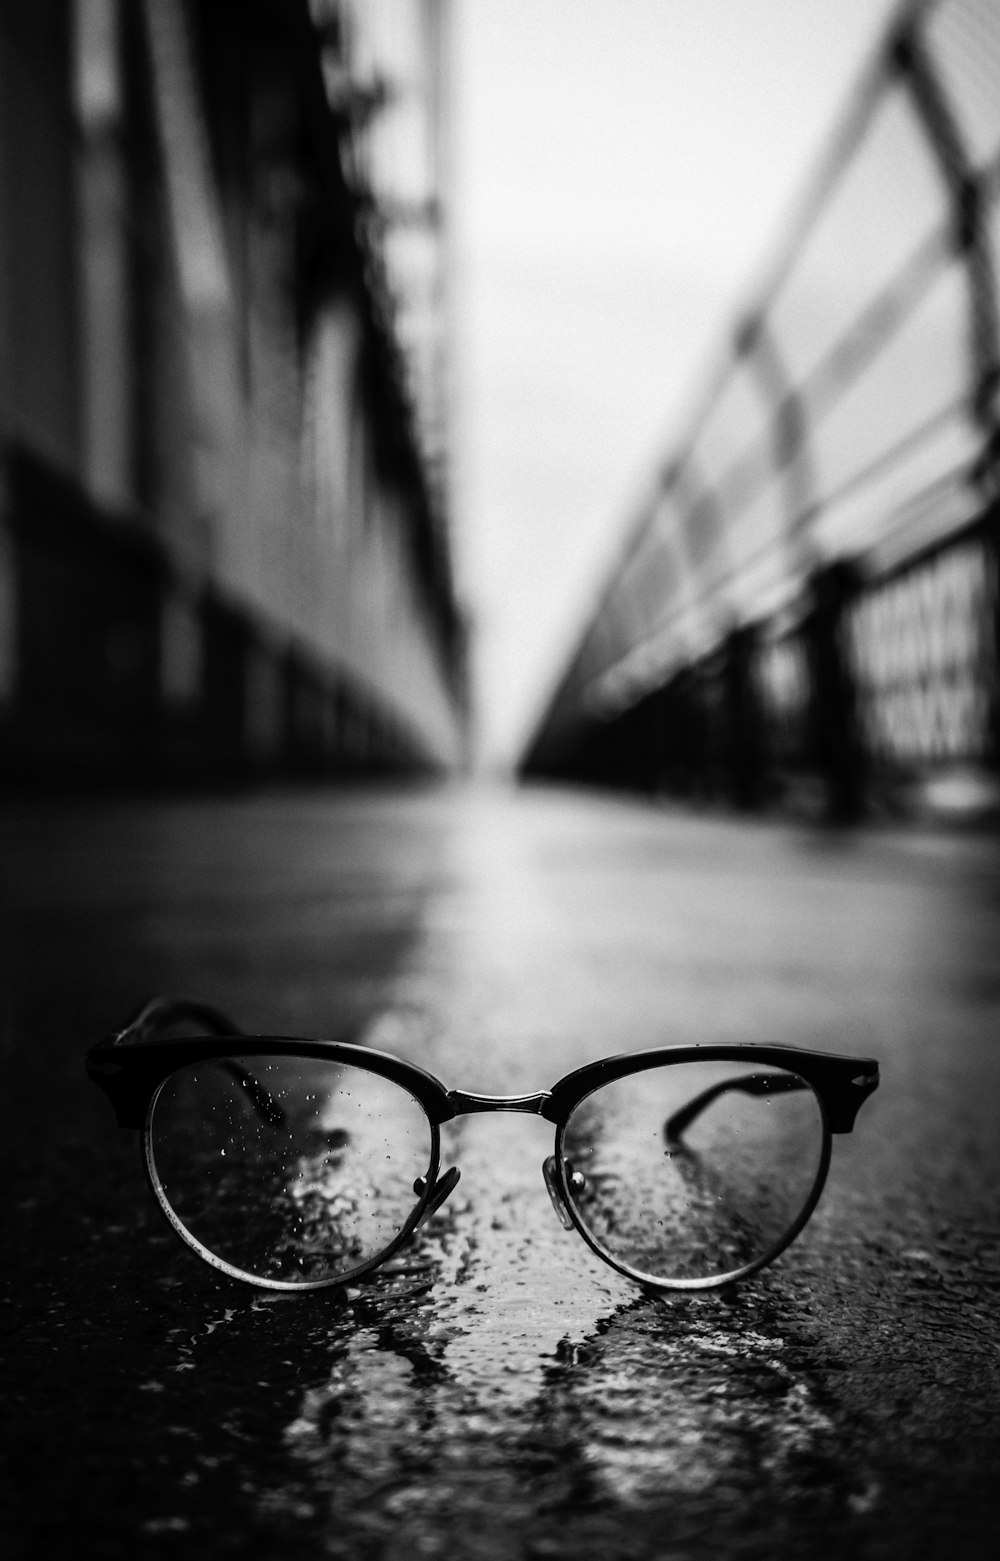 fotografia in scala di grigi di occhiali da sole in stile Clubmaster su strada